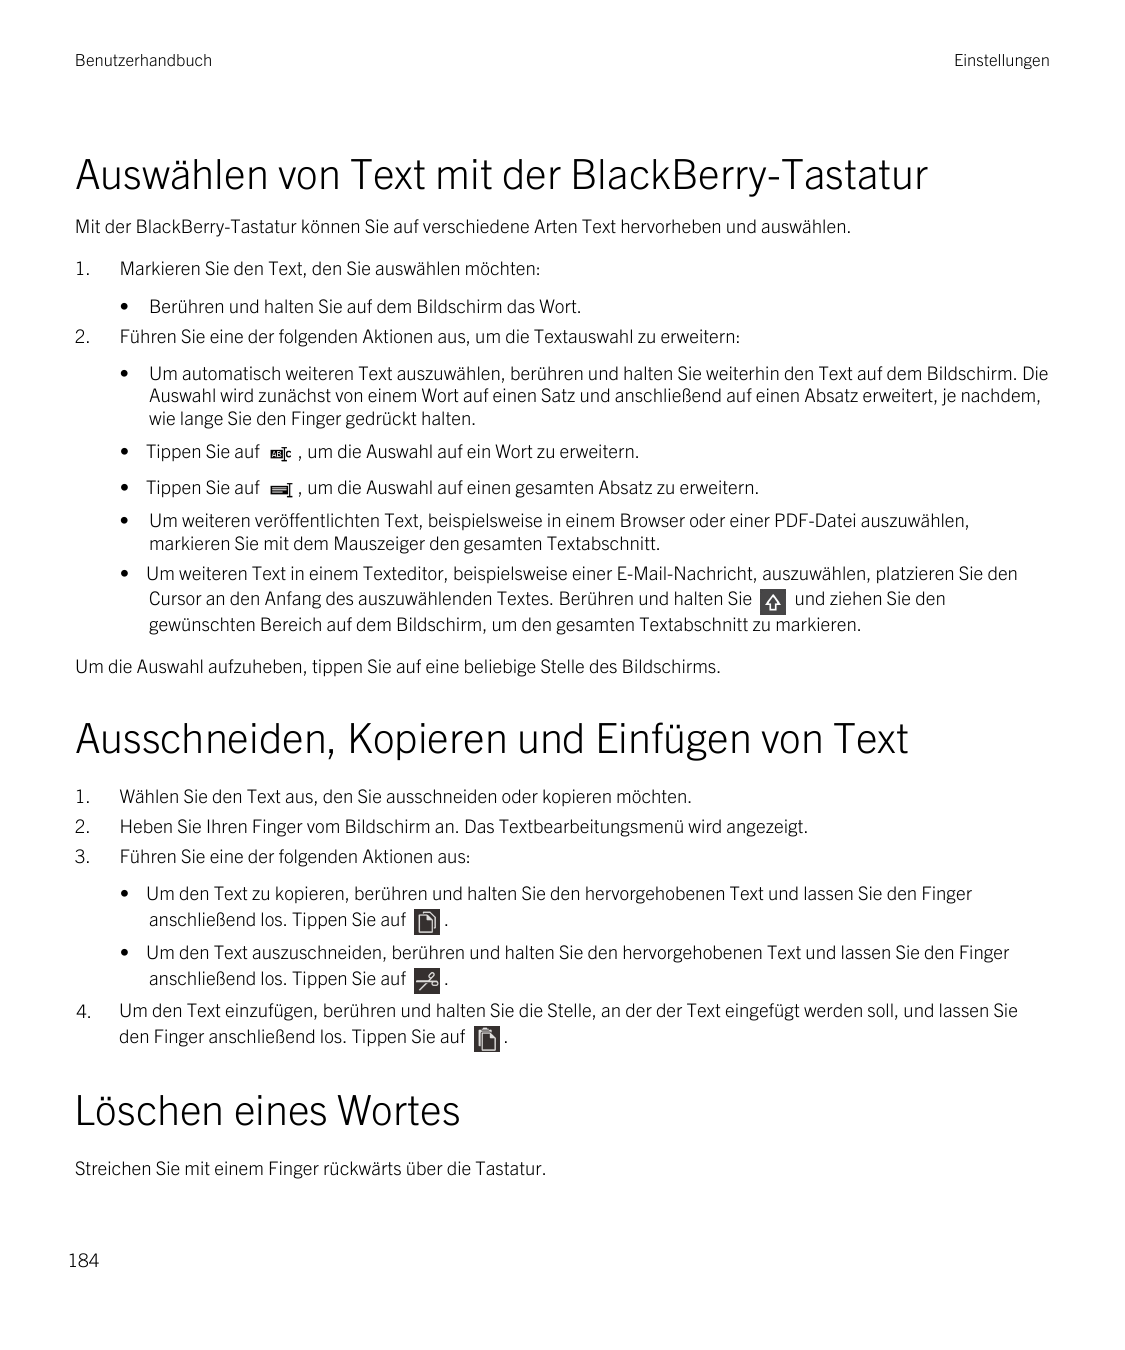 BenutzerhandbuchEinstellungenAuswählen von Text mit der BlackBerry-TastaturMit der BlackBerry-Tastatur können Sie auf verschiede